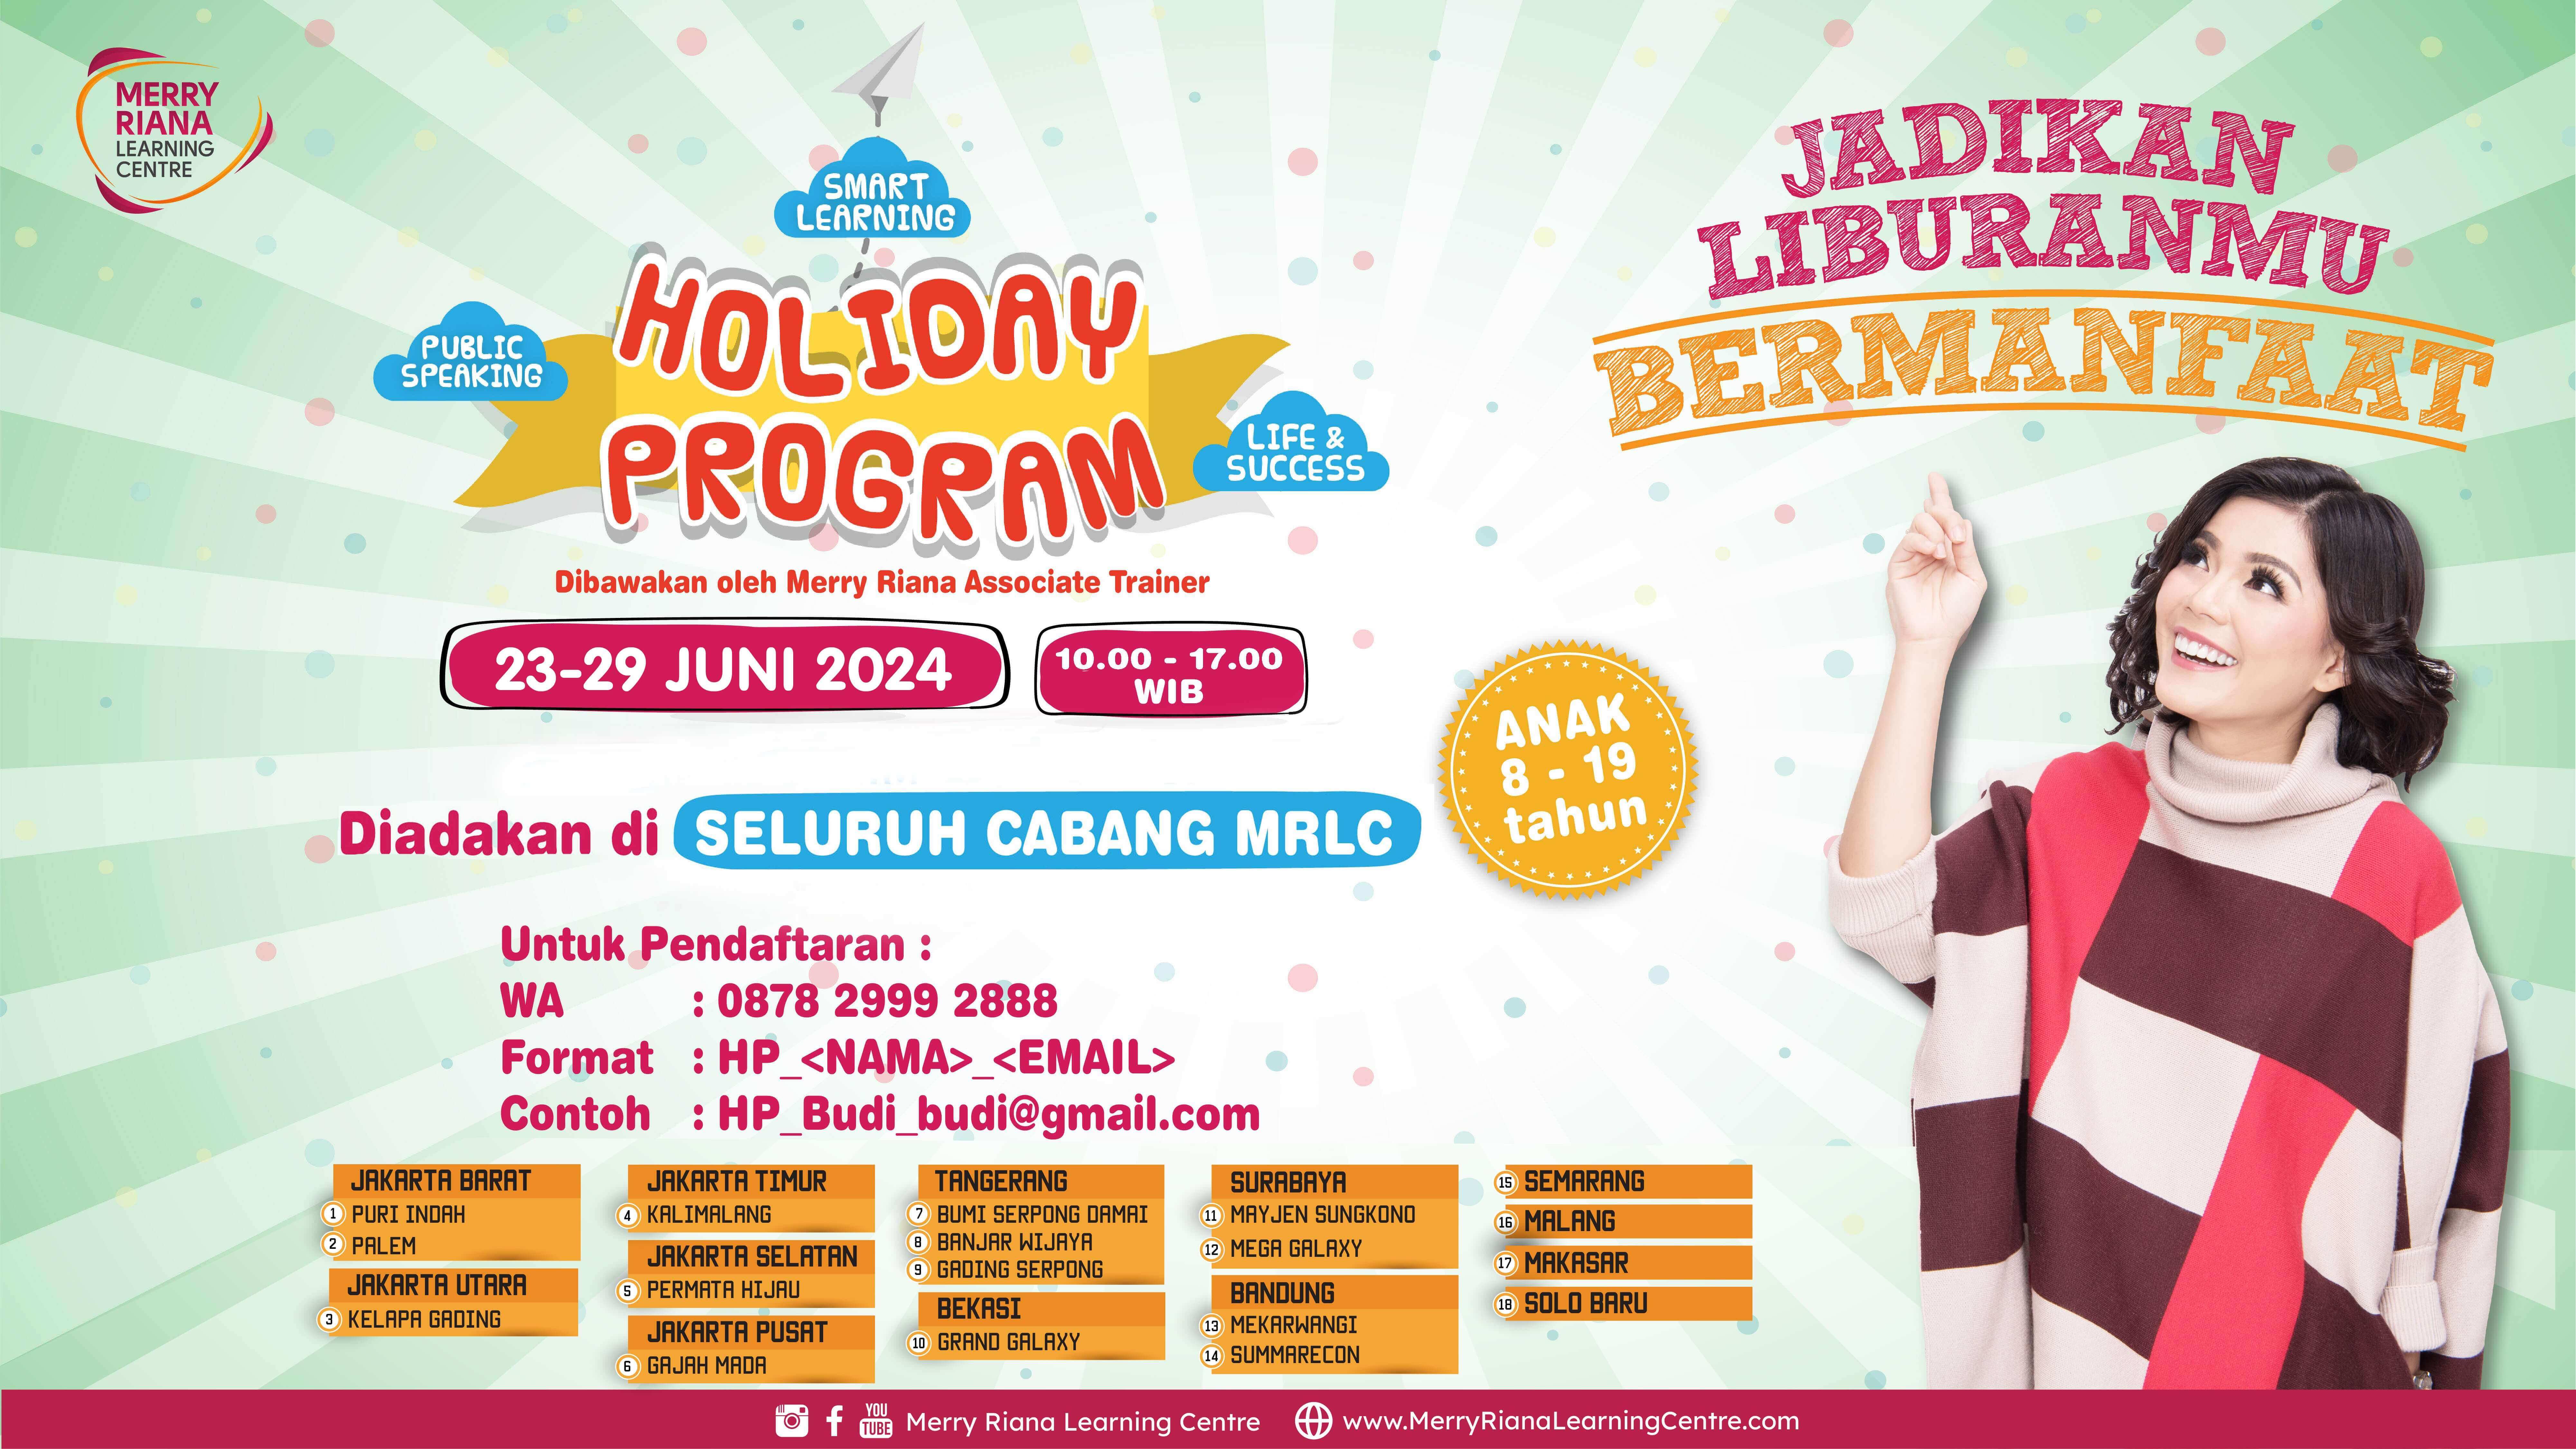 Holiday Program by Merry Riana Learning Centre (MRLC) merupakan PROGRAM UNGGULAN saat liburan sekolah yang telah diikuti lebih dari 1.000 anak dan remaja di seluruh Indonesia.